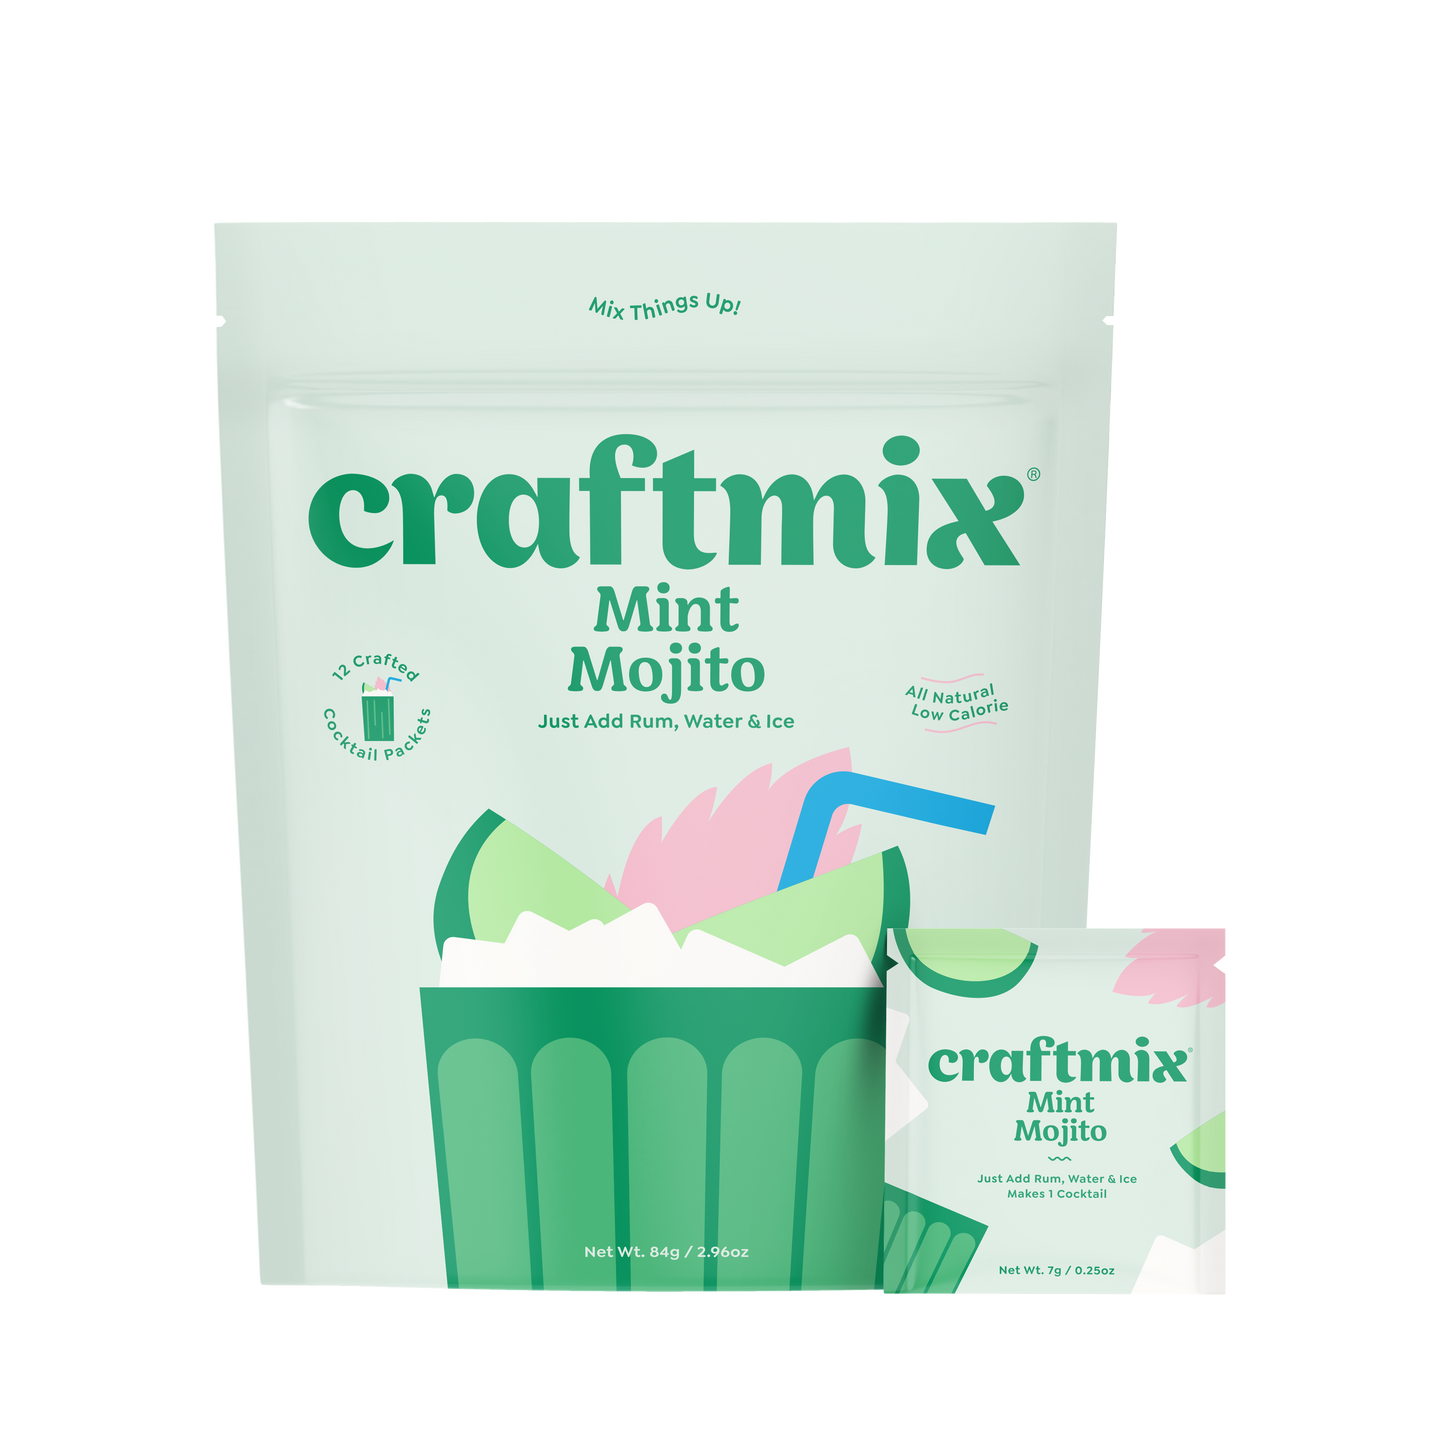 Mint Mojito by Craftmix